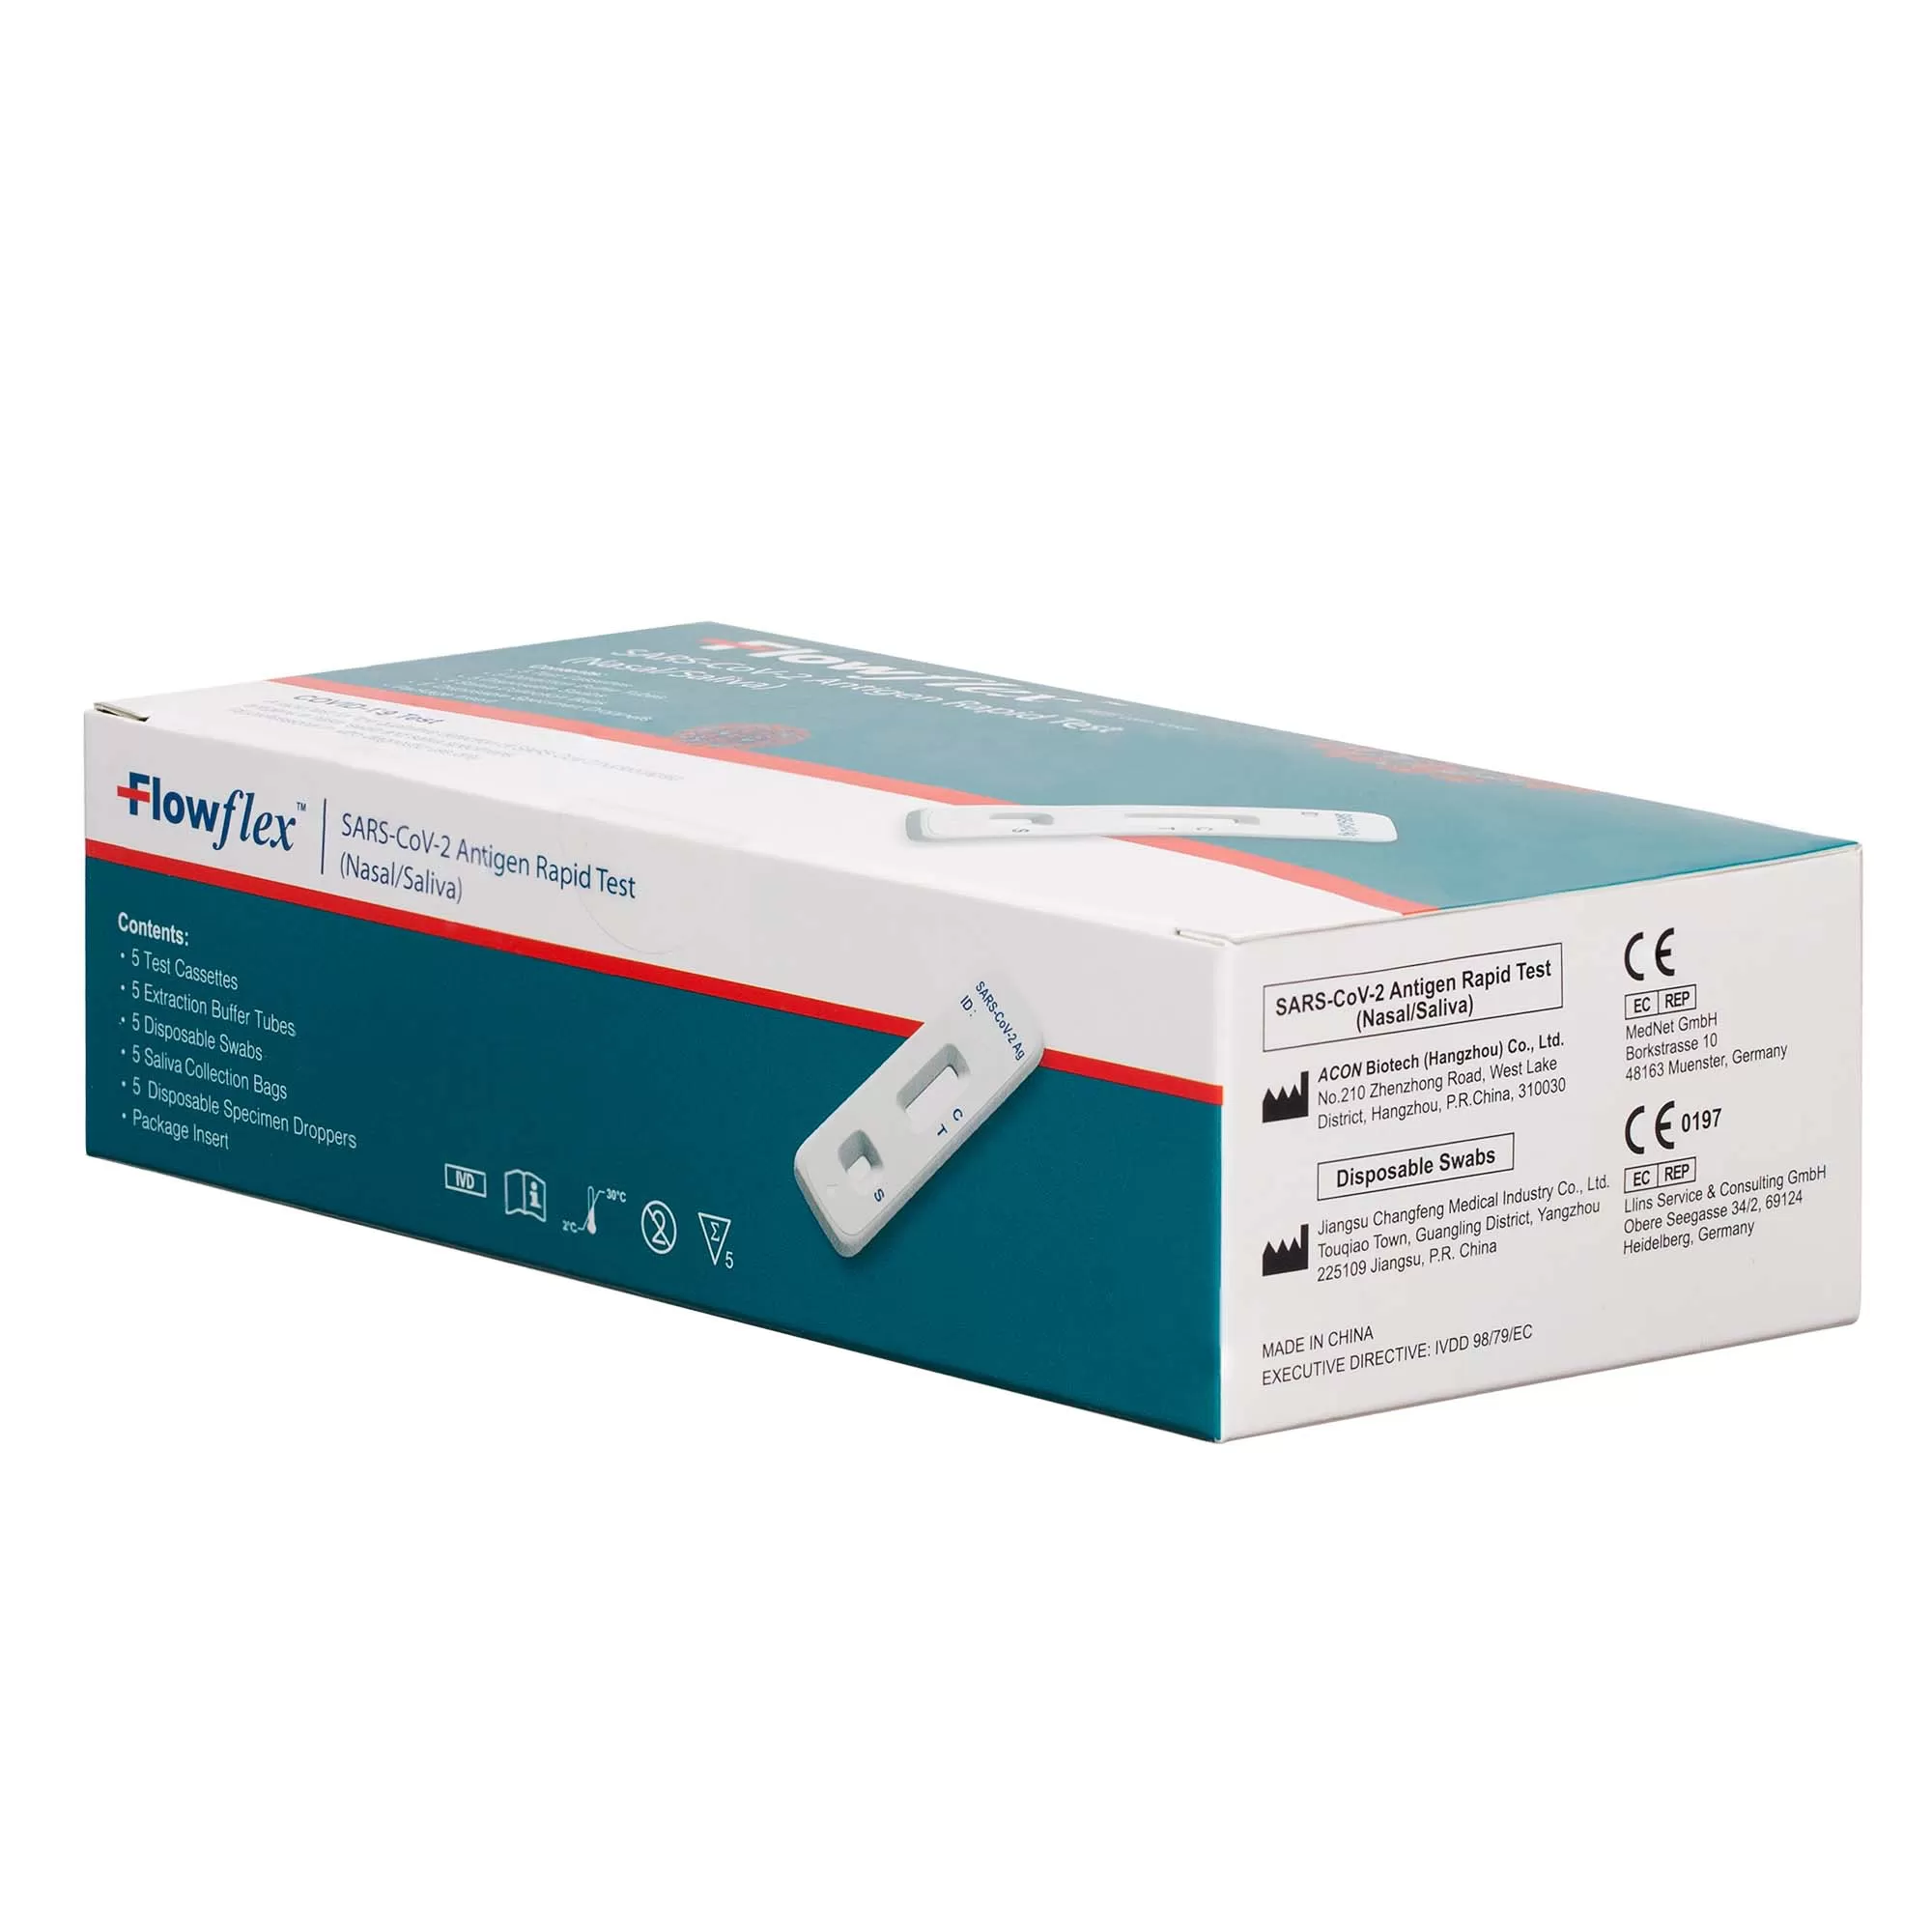 Teste Rapide 2 in 1 Saliva/Nazal COVID-19 Antigen, Flowflex, set 5 teste 3